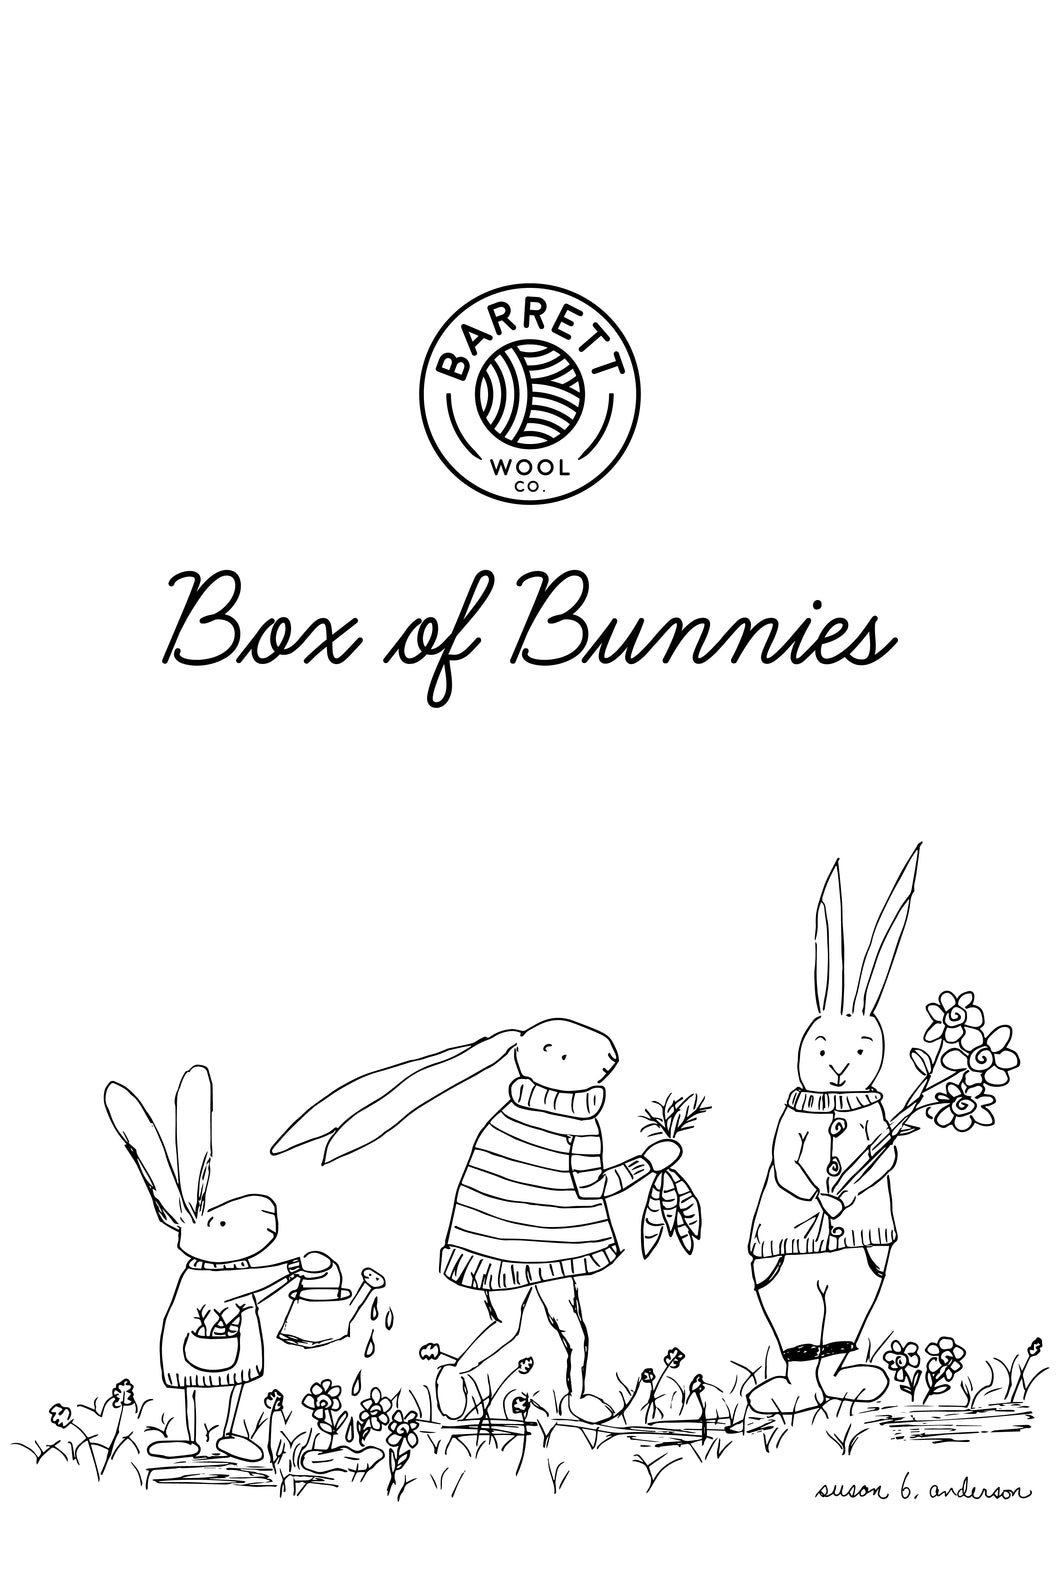 Box of Bunnies